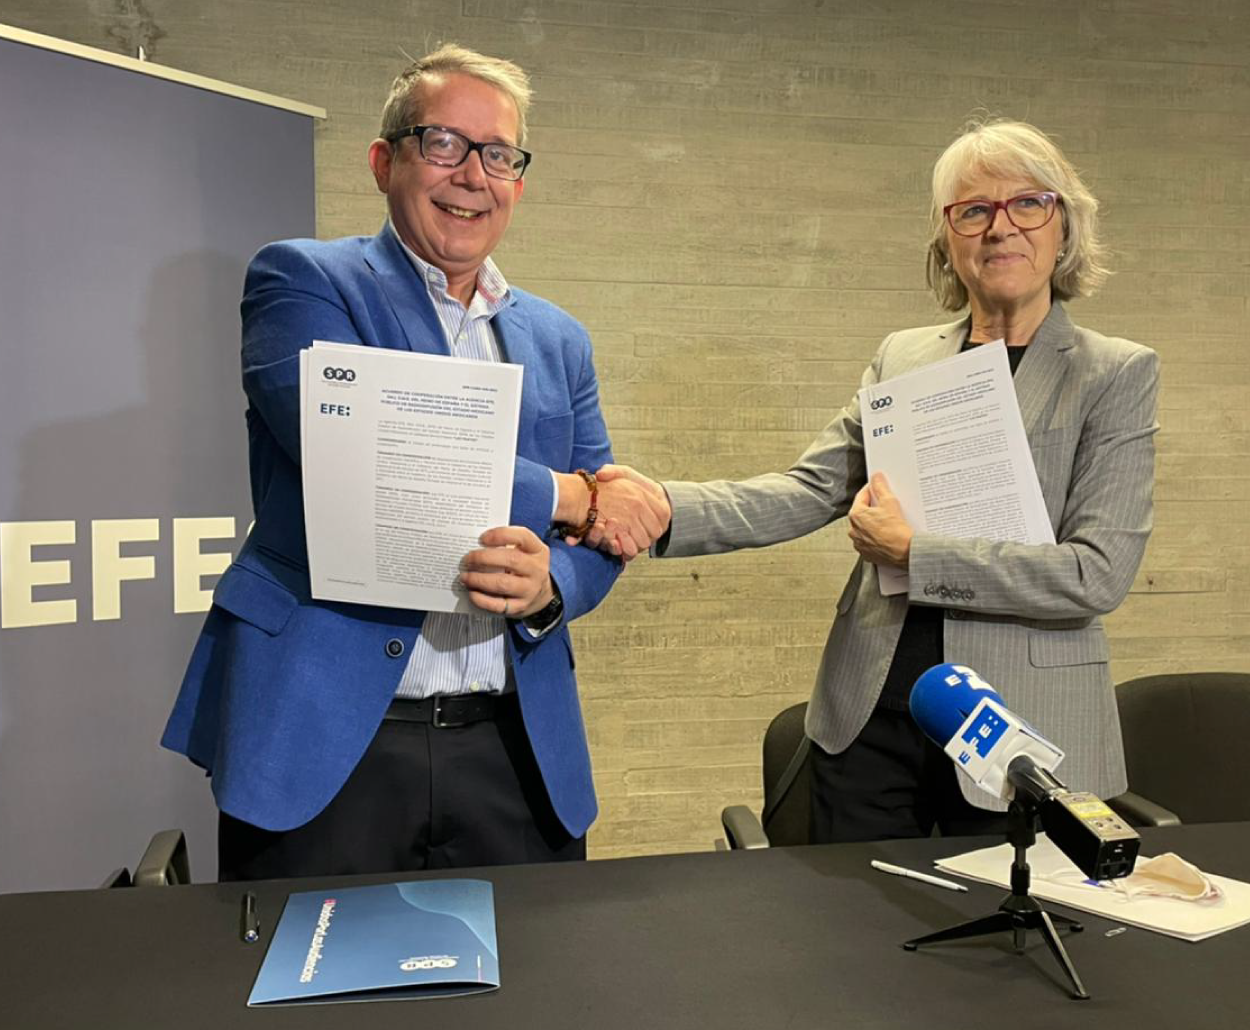 Agencia Efe y SPR firman acuerdo de cooperación para combatir noticias falsas.